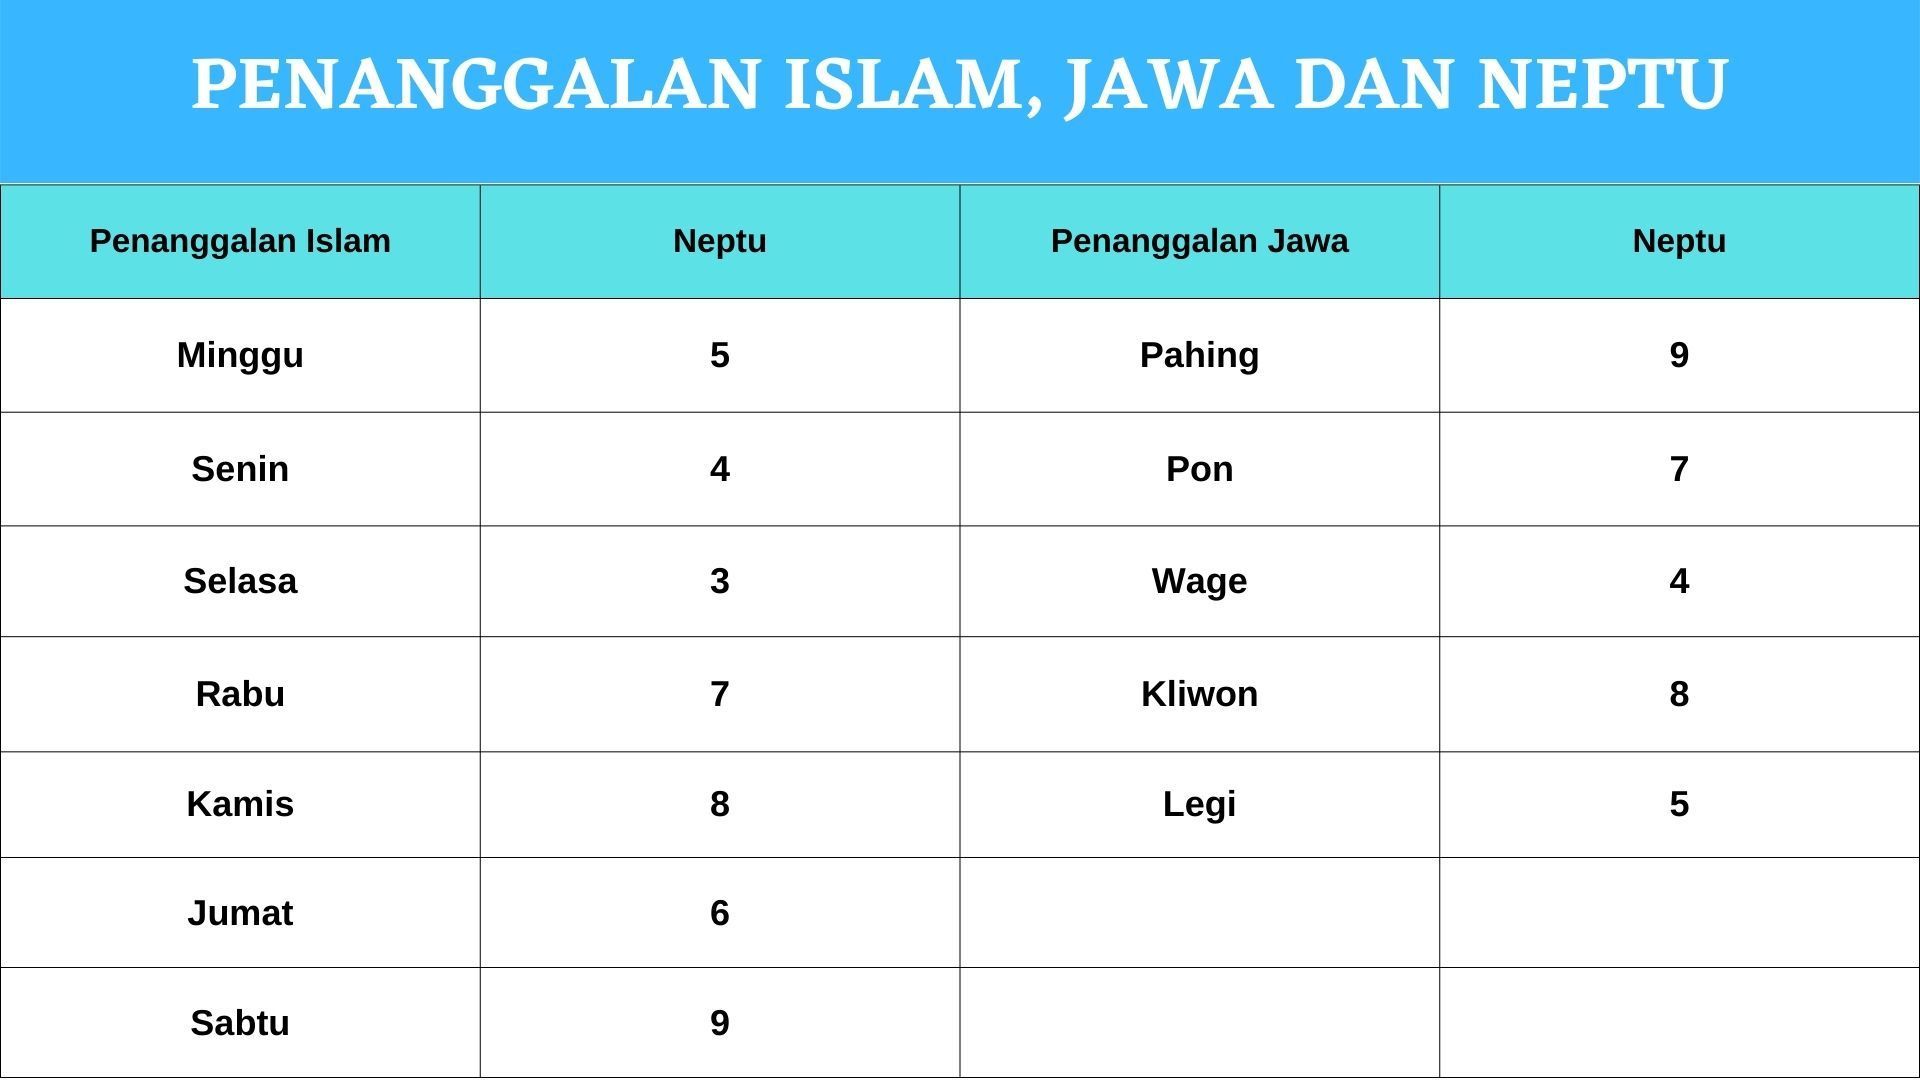 Penaggalan Islam, Jawa dan Neptu